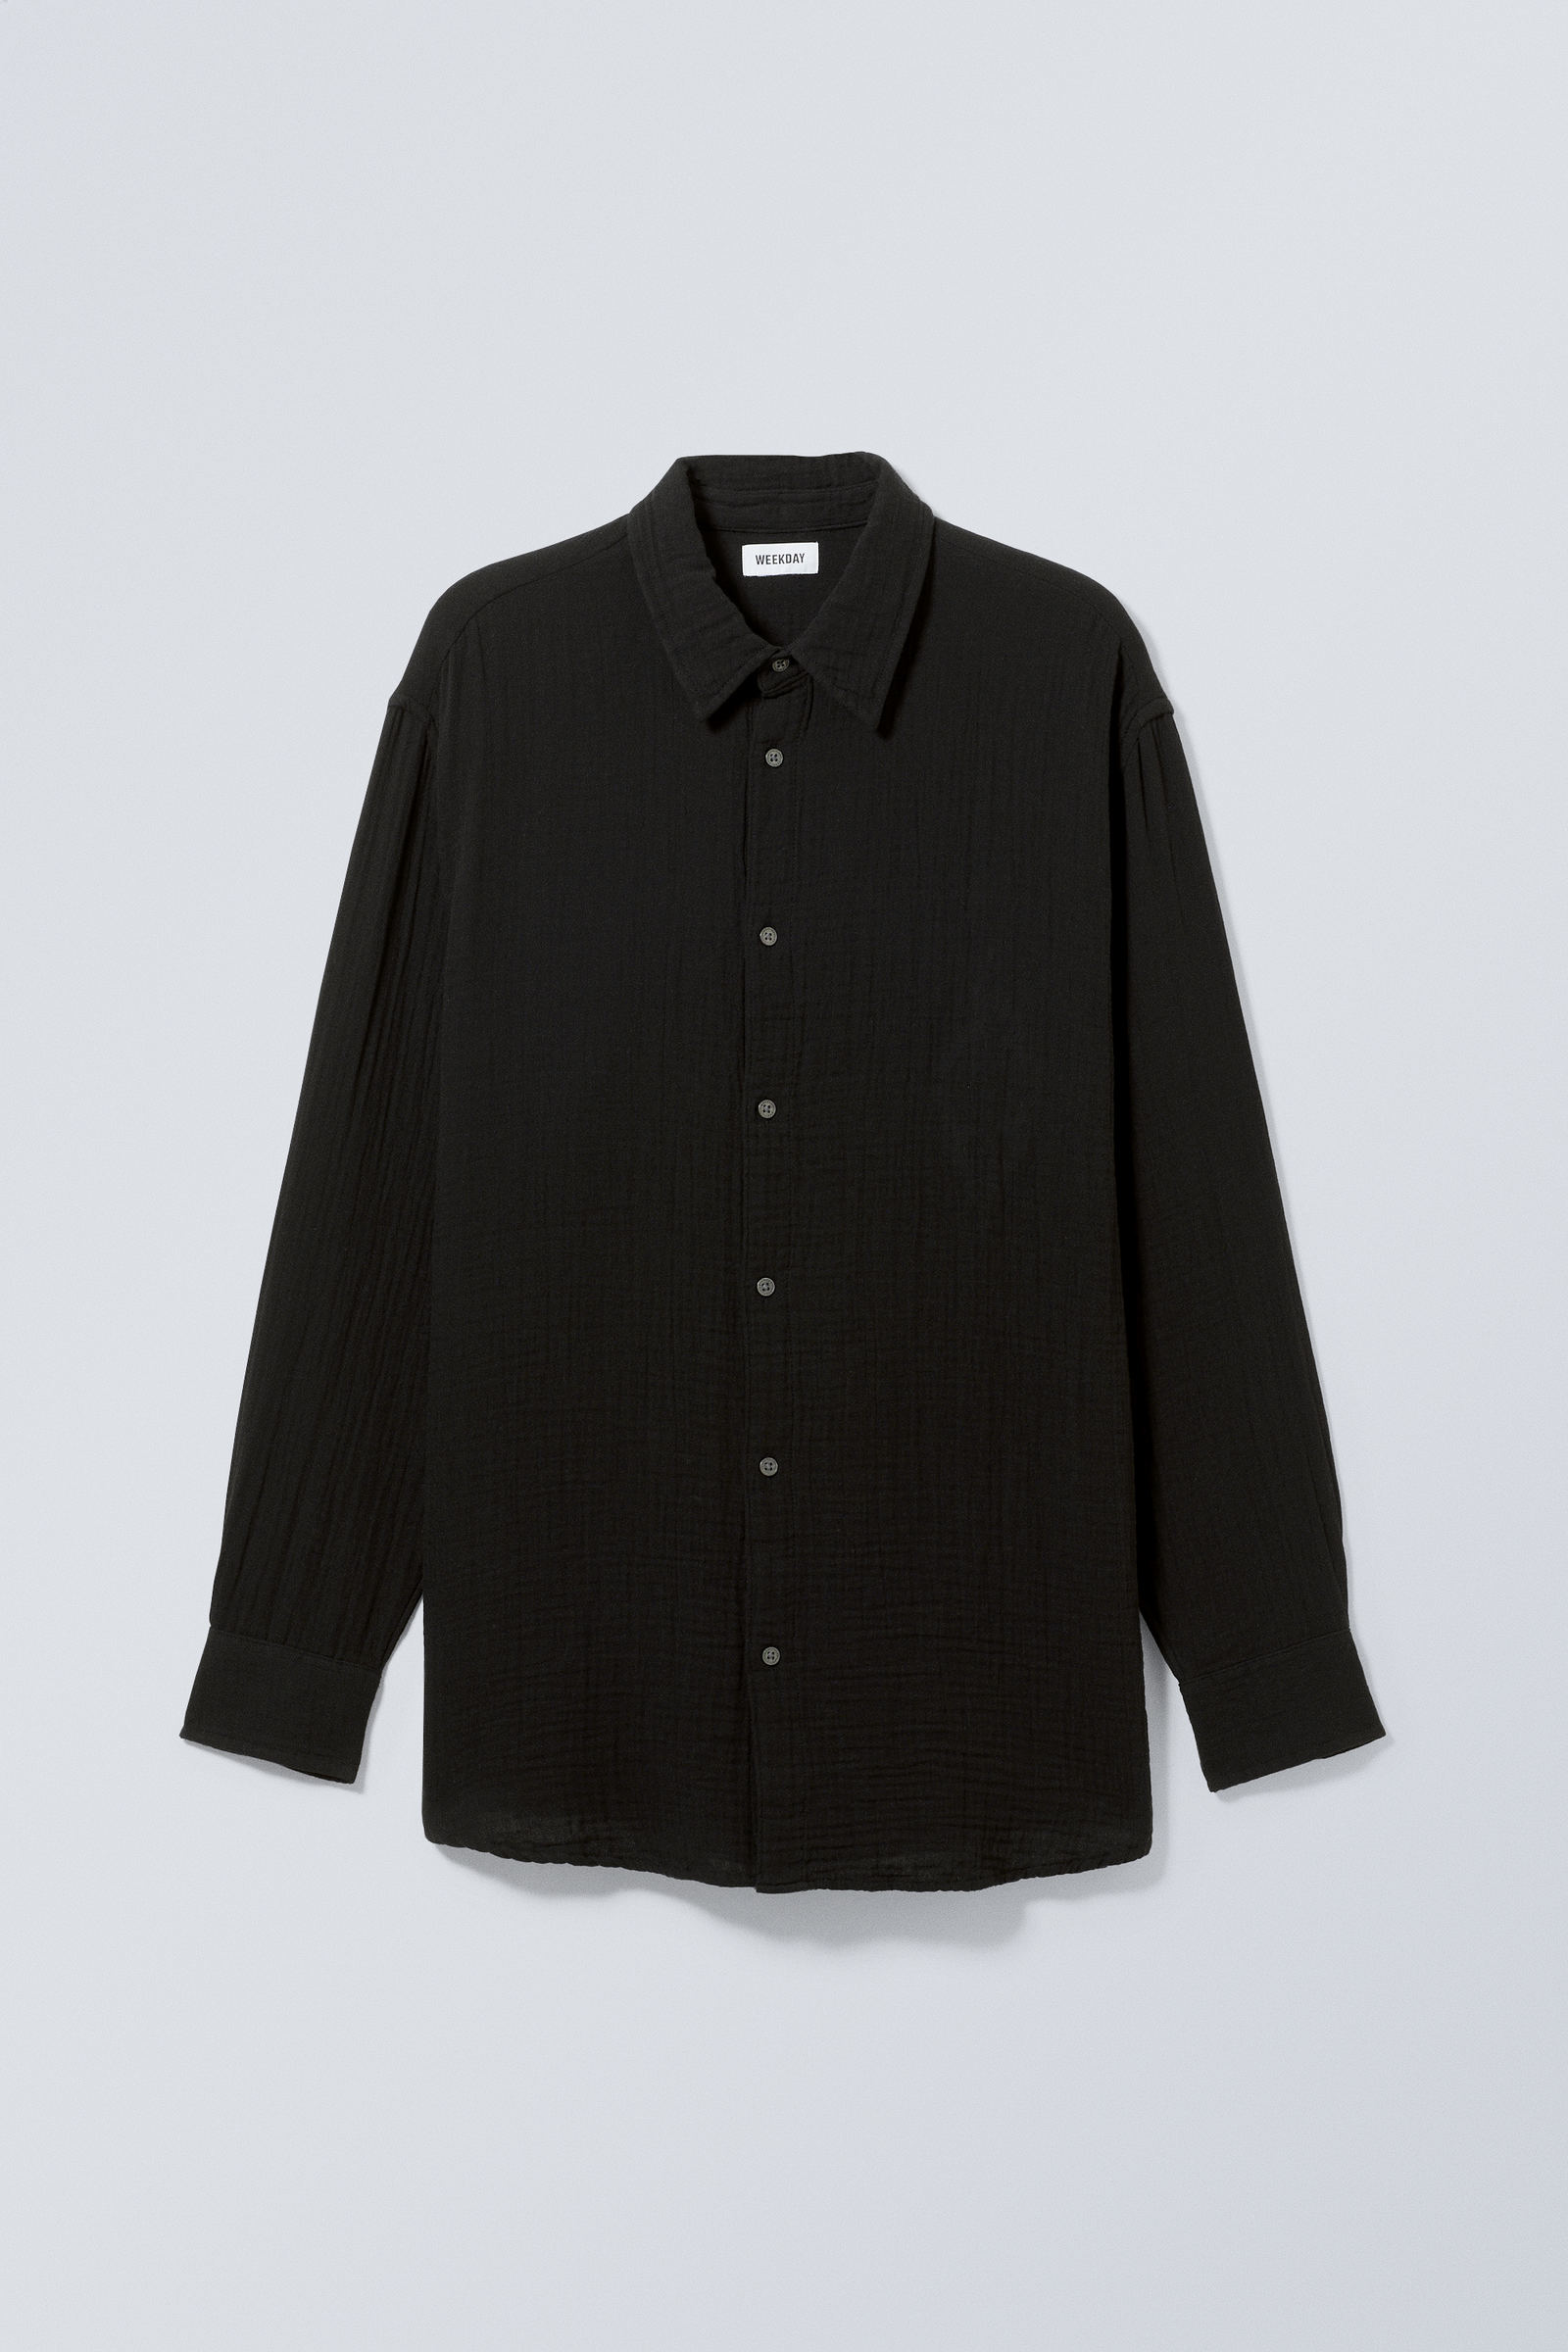 Black - Oversized Shirt - 3